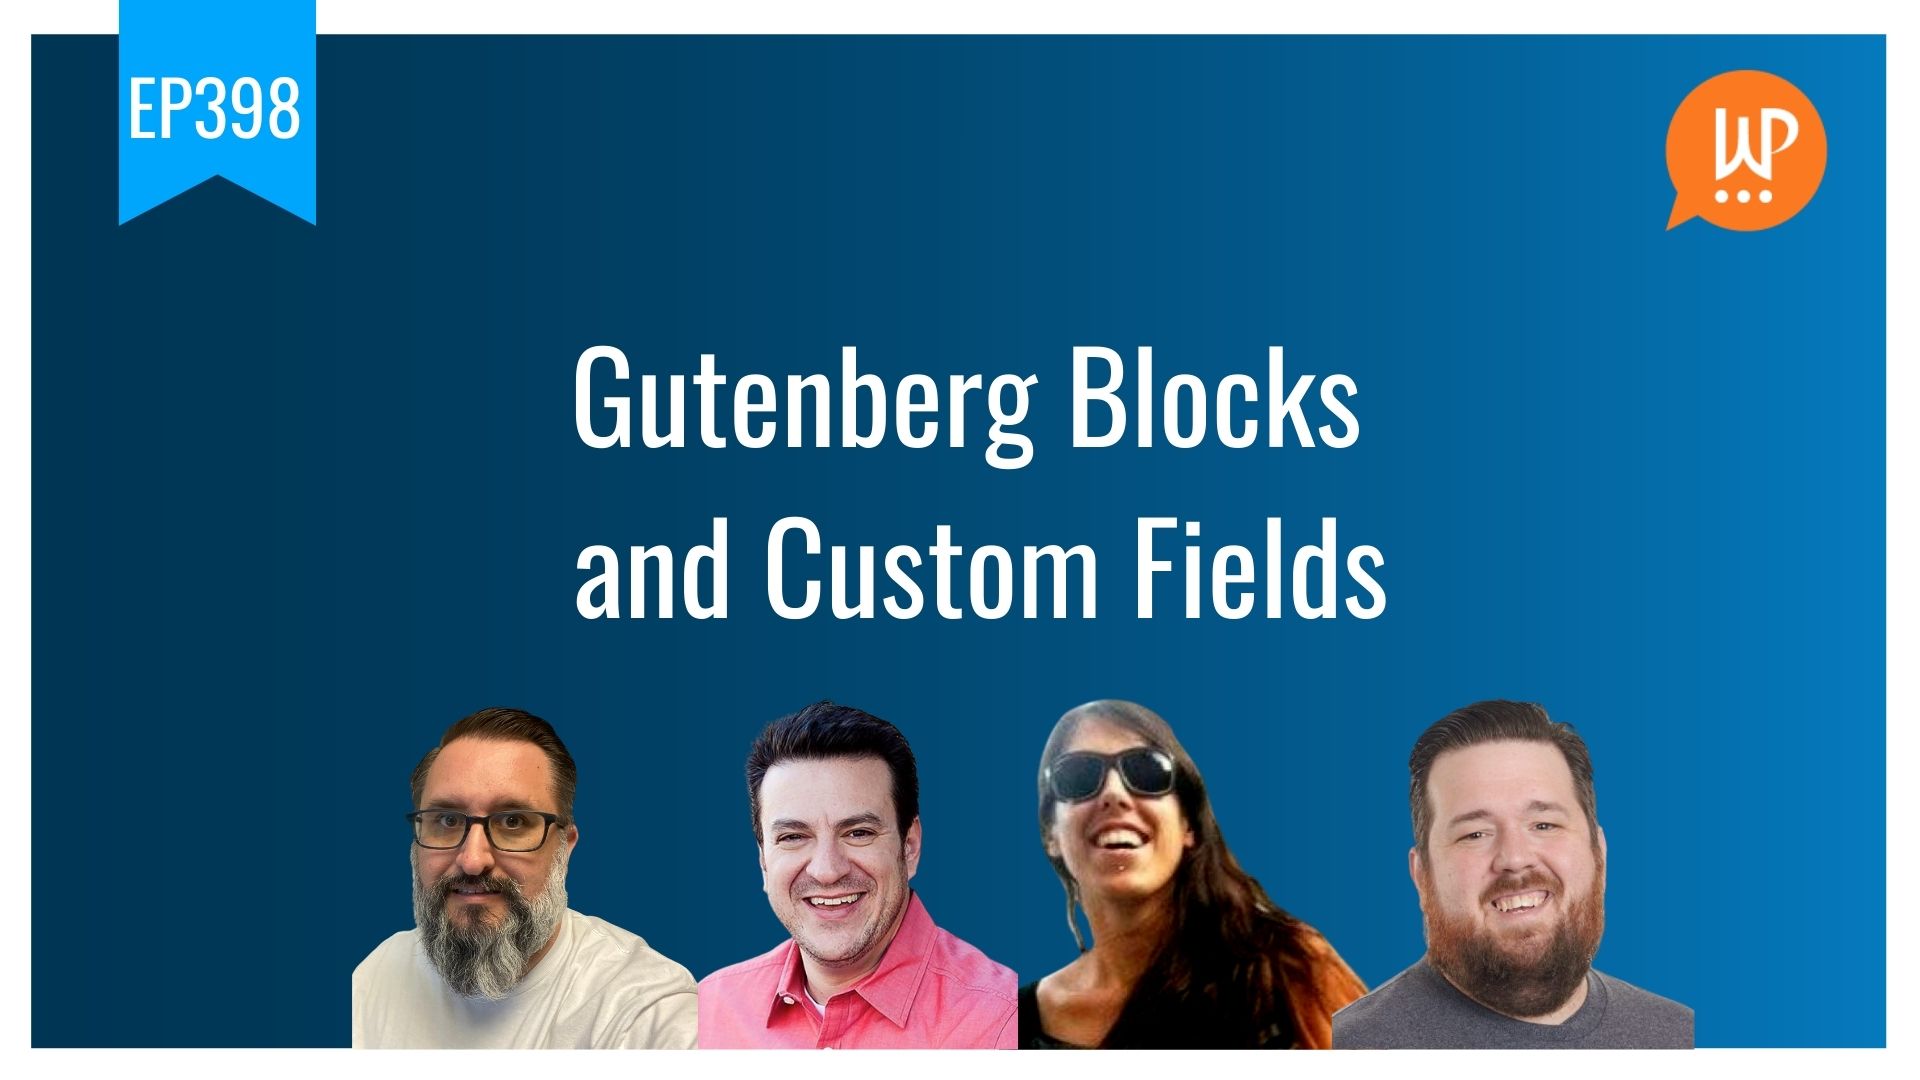 EP398 – Gutenberg Blocks and Custom Fields